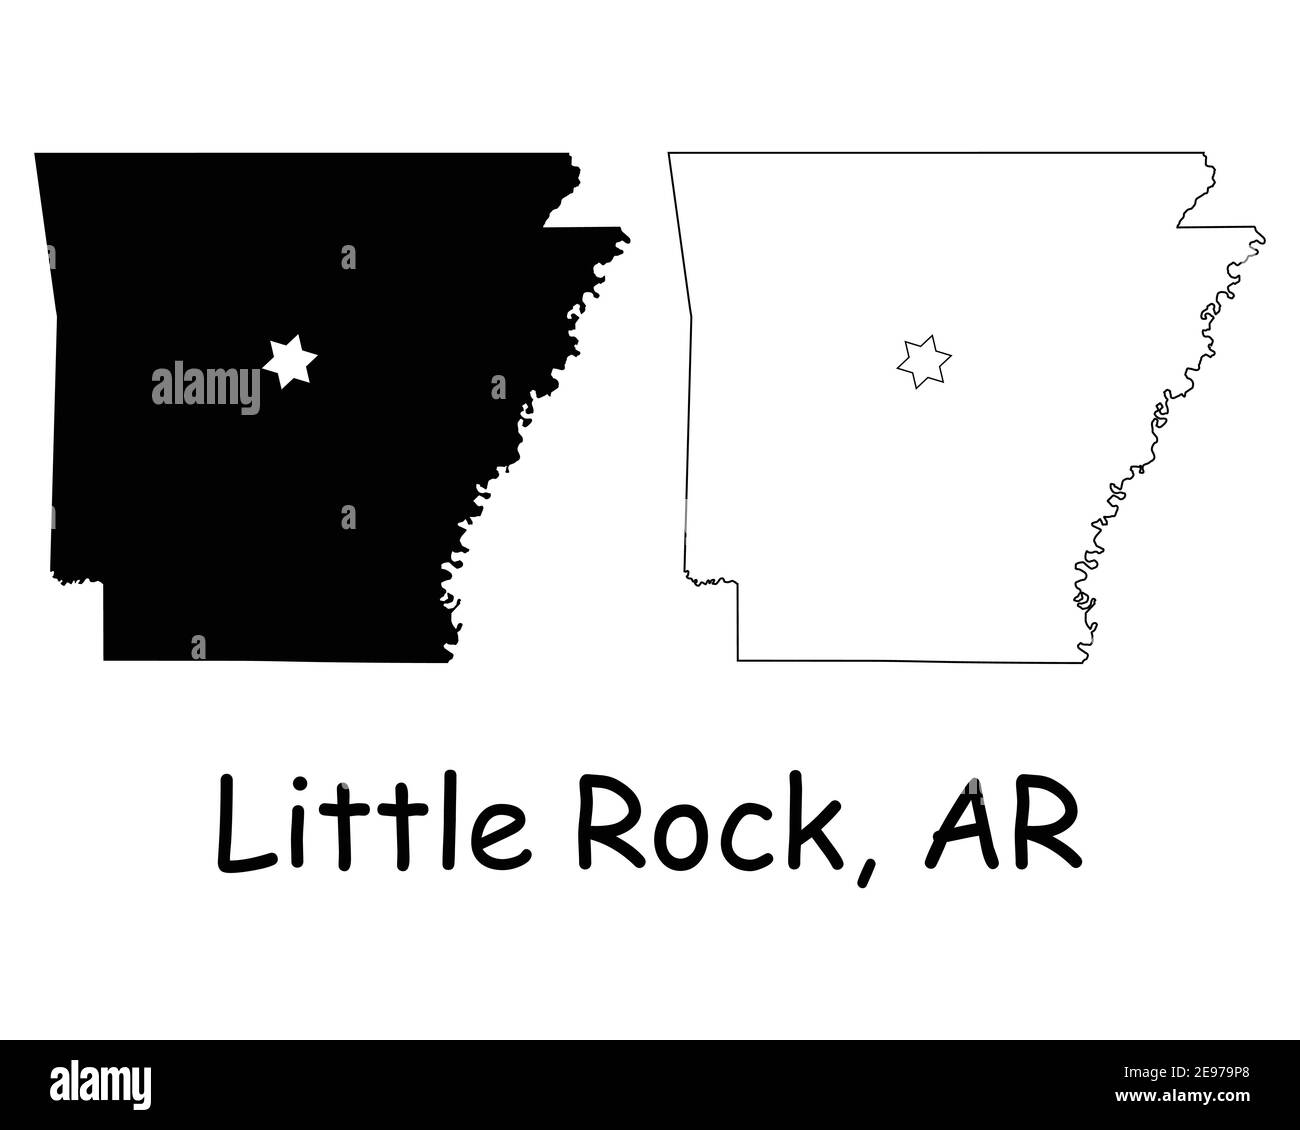 Arkansas AR State Map USA mit Capital City Star in Little Rock. Schwarze Silhouette und umreißen isolierte Karten auf weißem Hintergrund. EPS-Vektor Stock Vektor